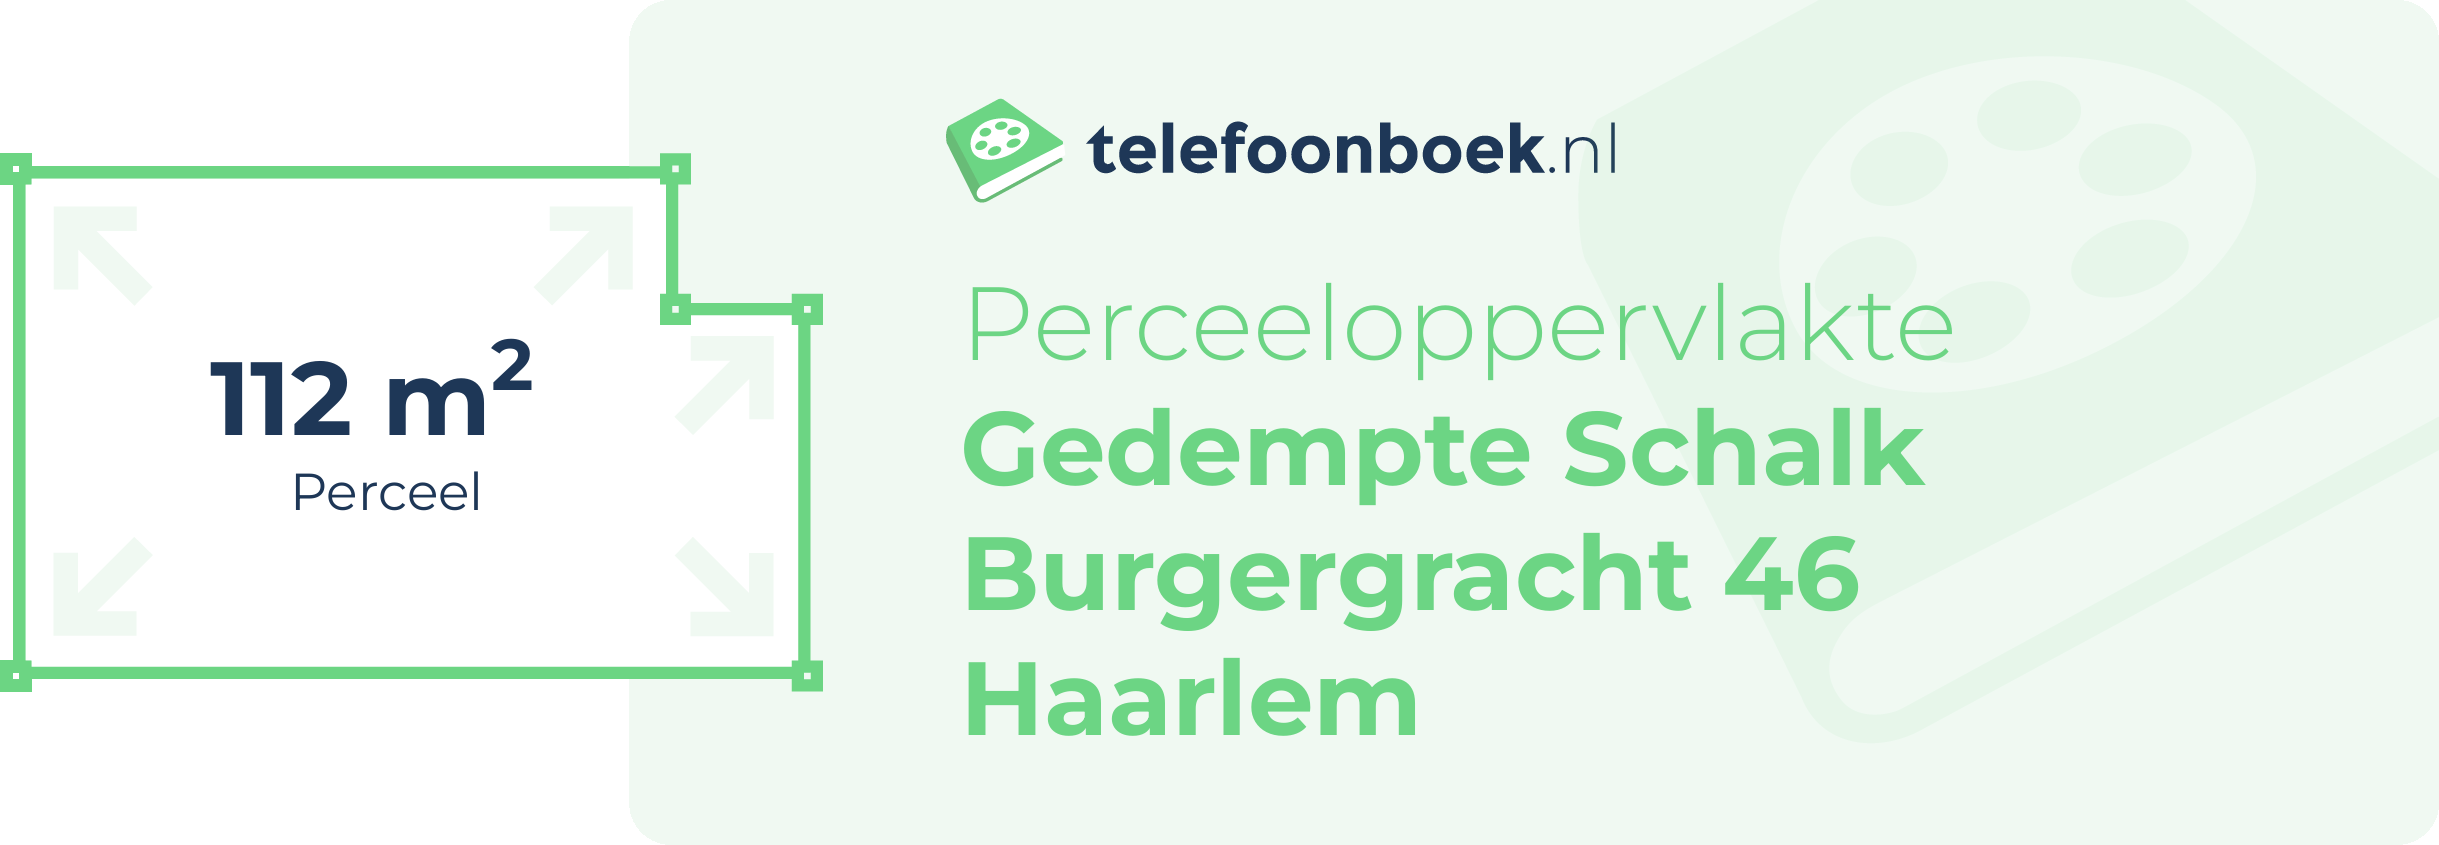 Perceeloppervlakte Gedempte Schalk Burgergracht 46 Haarlem